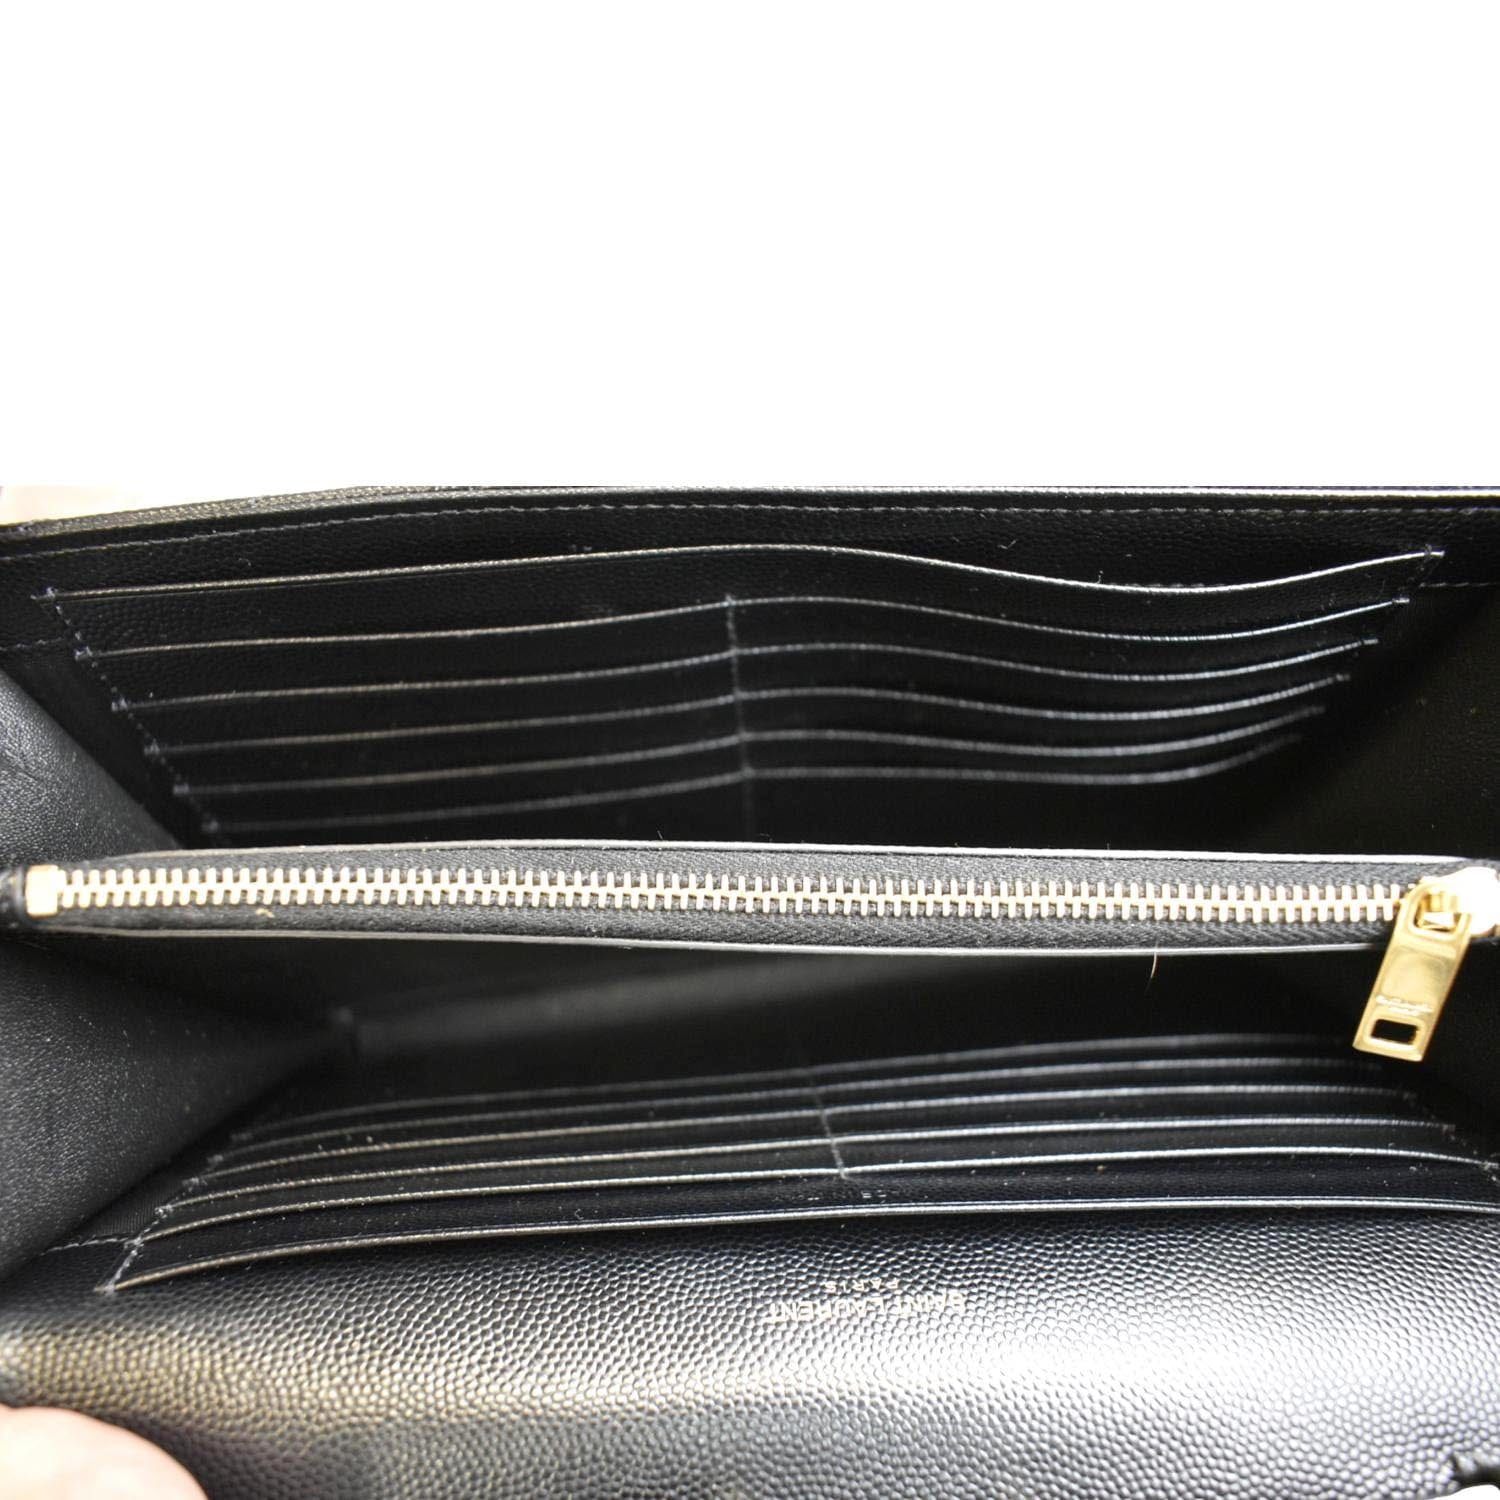 SAINT LAURENT PARIS Shoulder Bag 515822 Chain bag leather Black Silver – JP- BRANDS.com